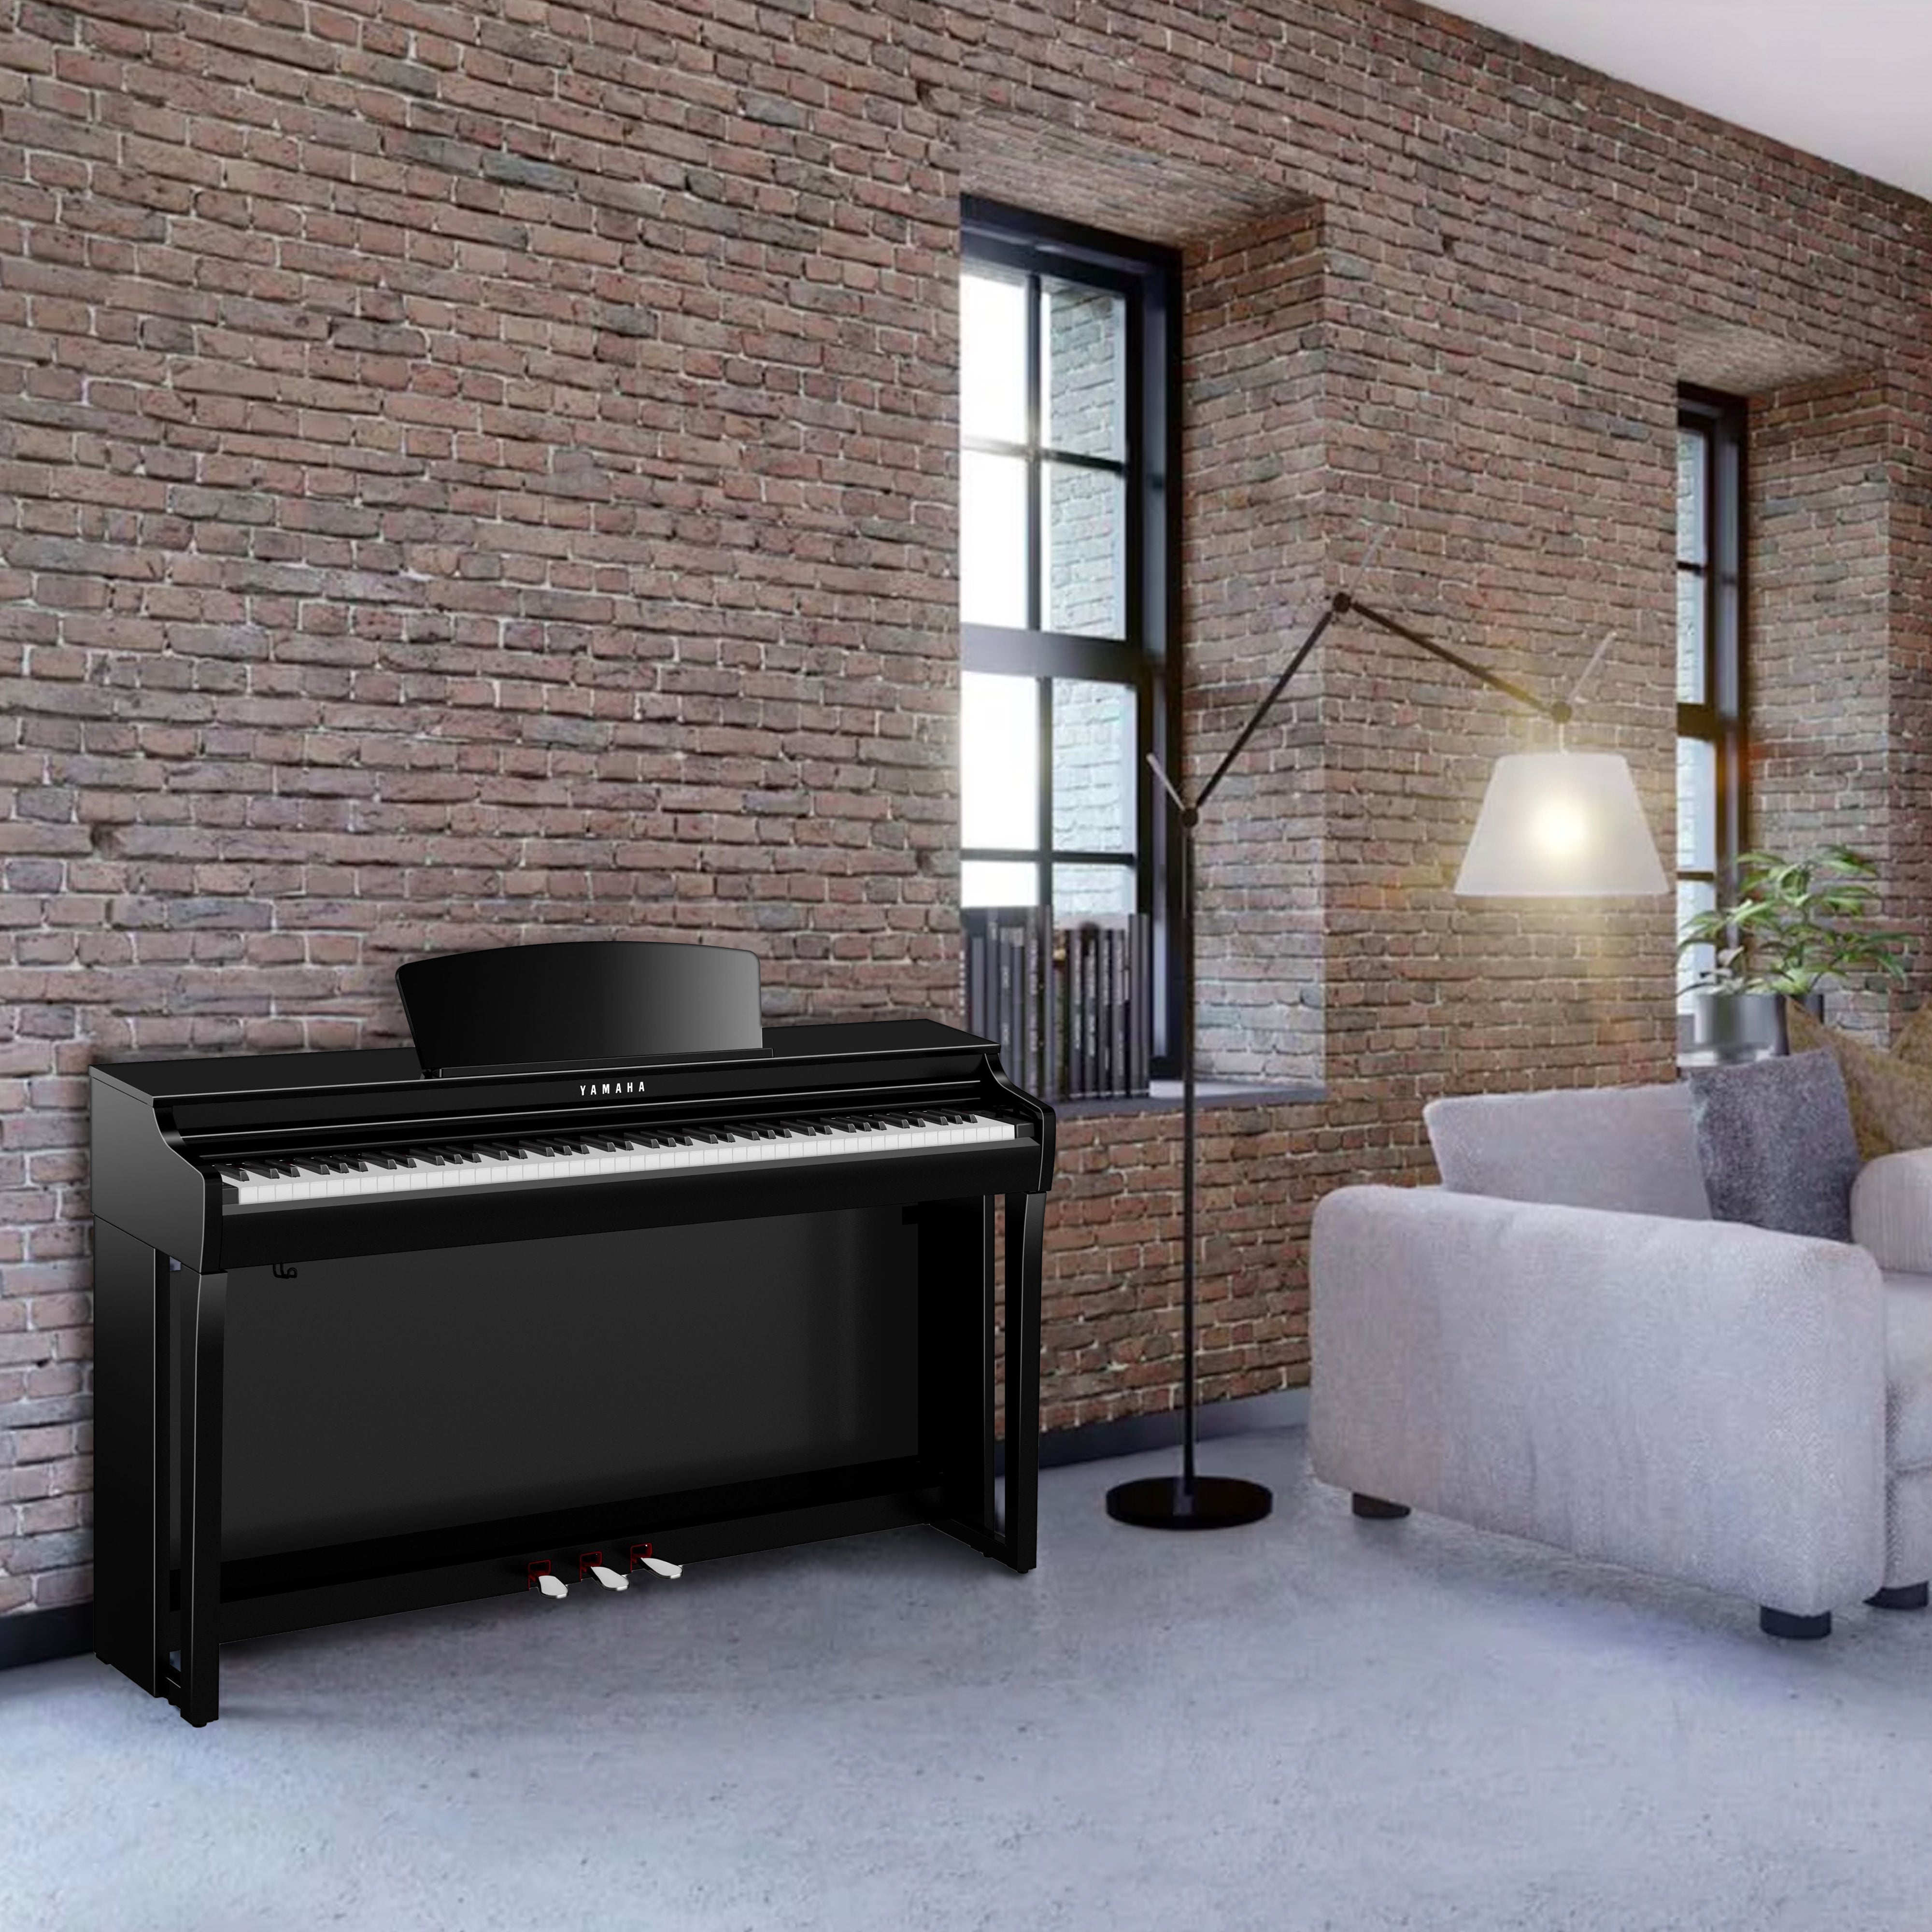 Yamaha Clavinova CLP-725 Digital Piano - Polished Ebony - in a loft apartment